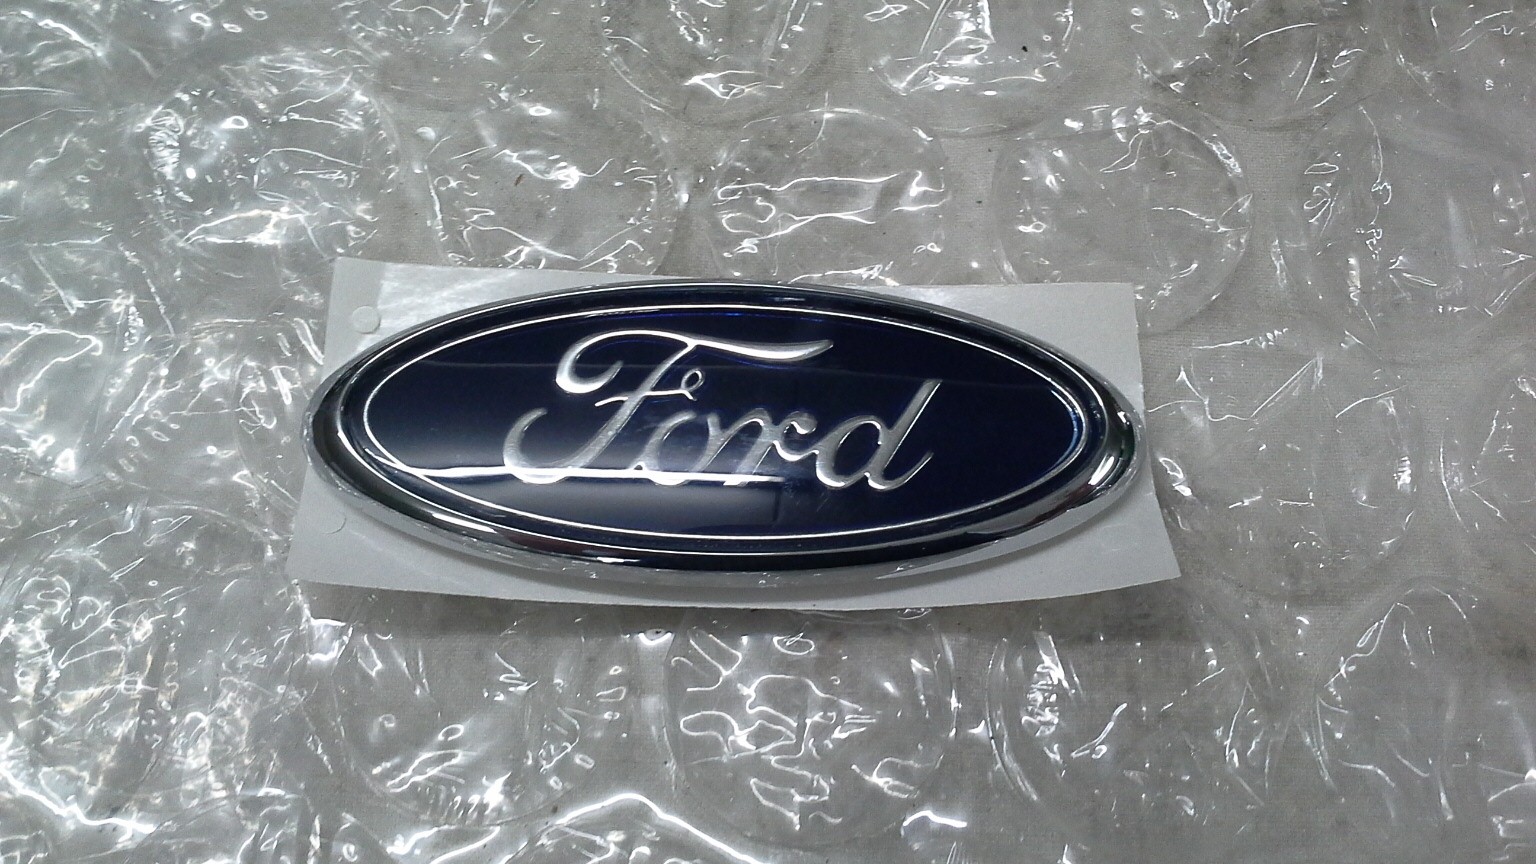 1030679-Ford Original Ford-Emblem vorne Ford Puma 1997-2001